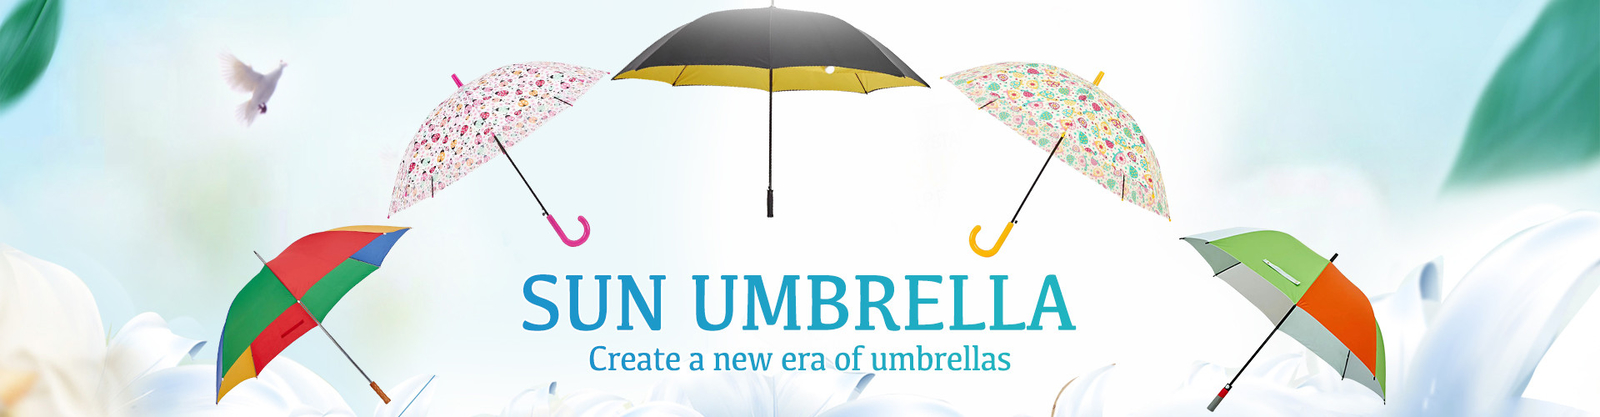 guarda-chuva compacto do golfe